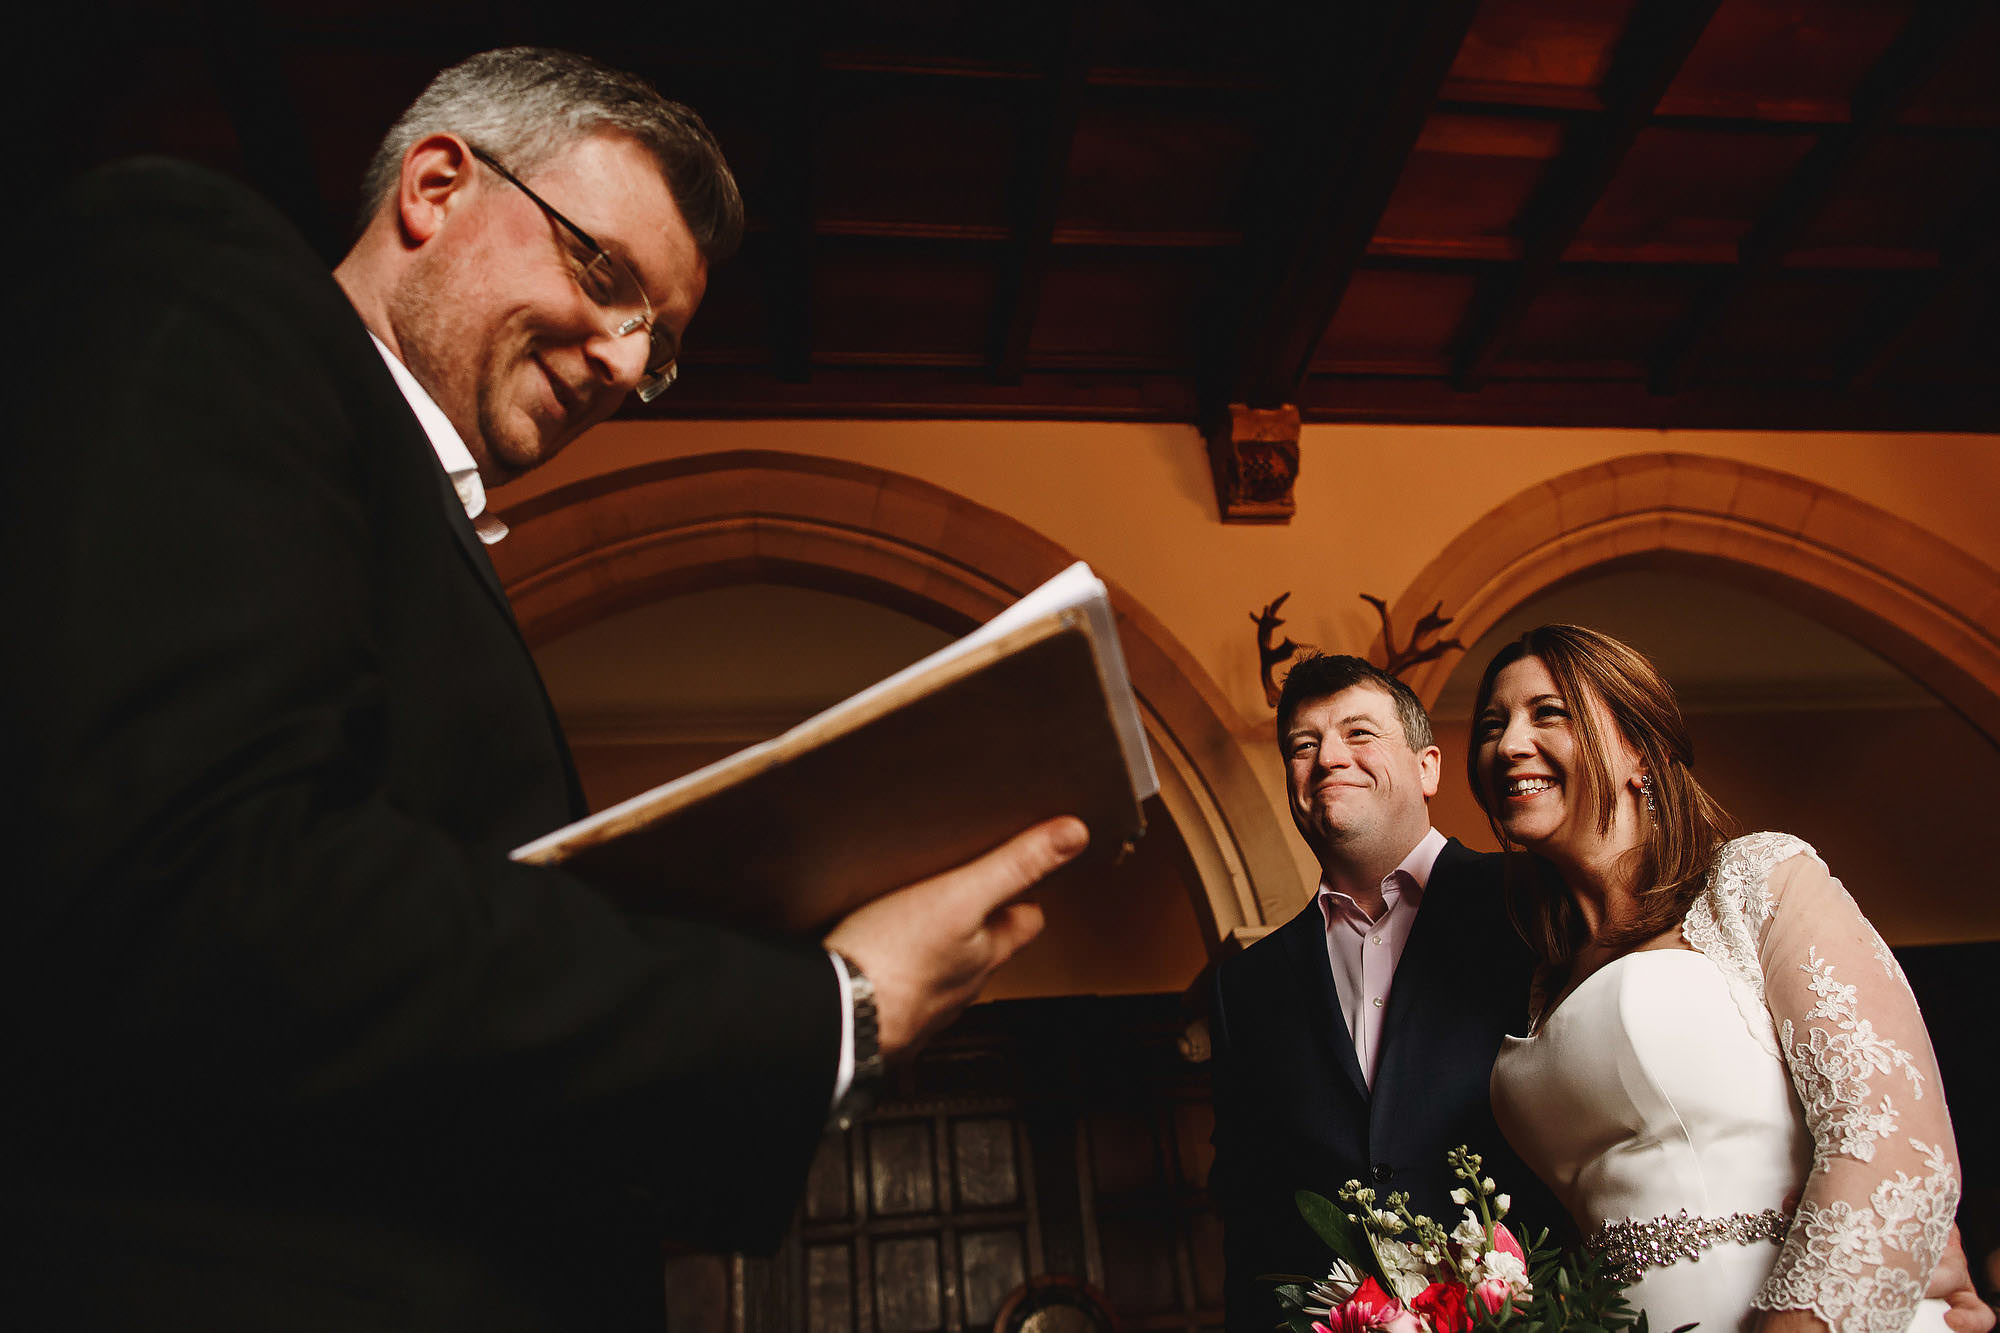 Huntsham court wedding photography devon